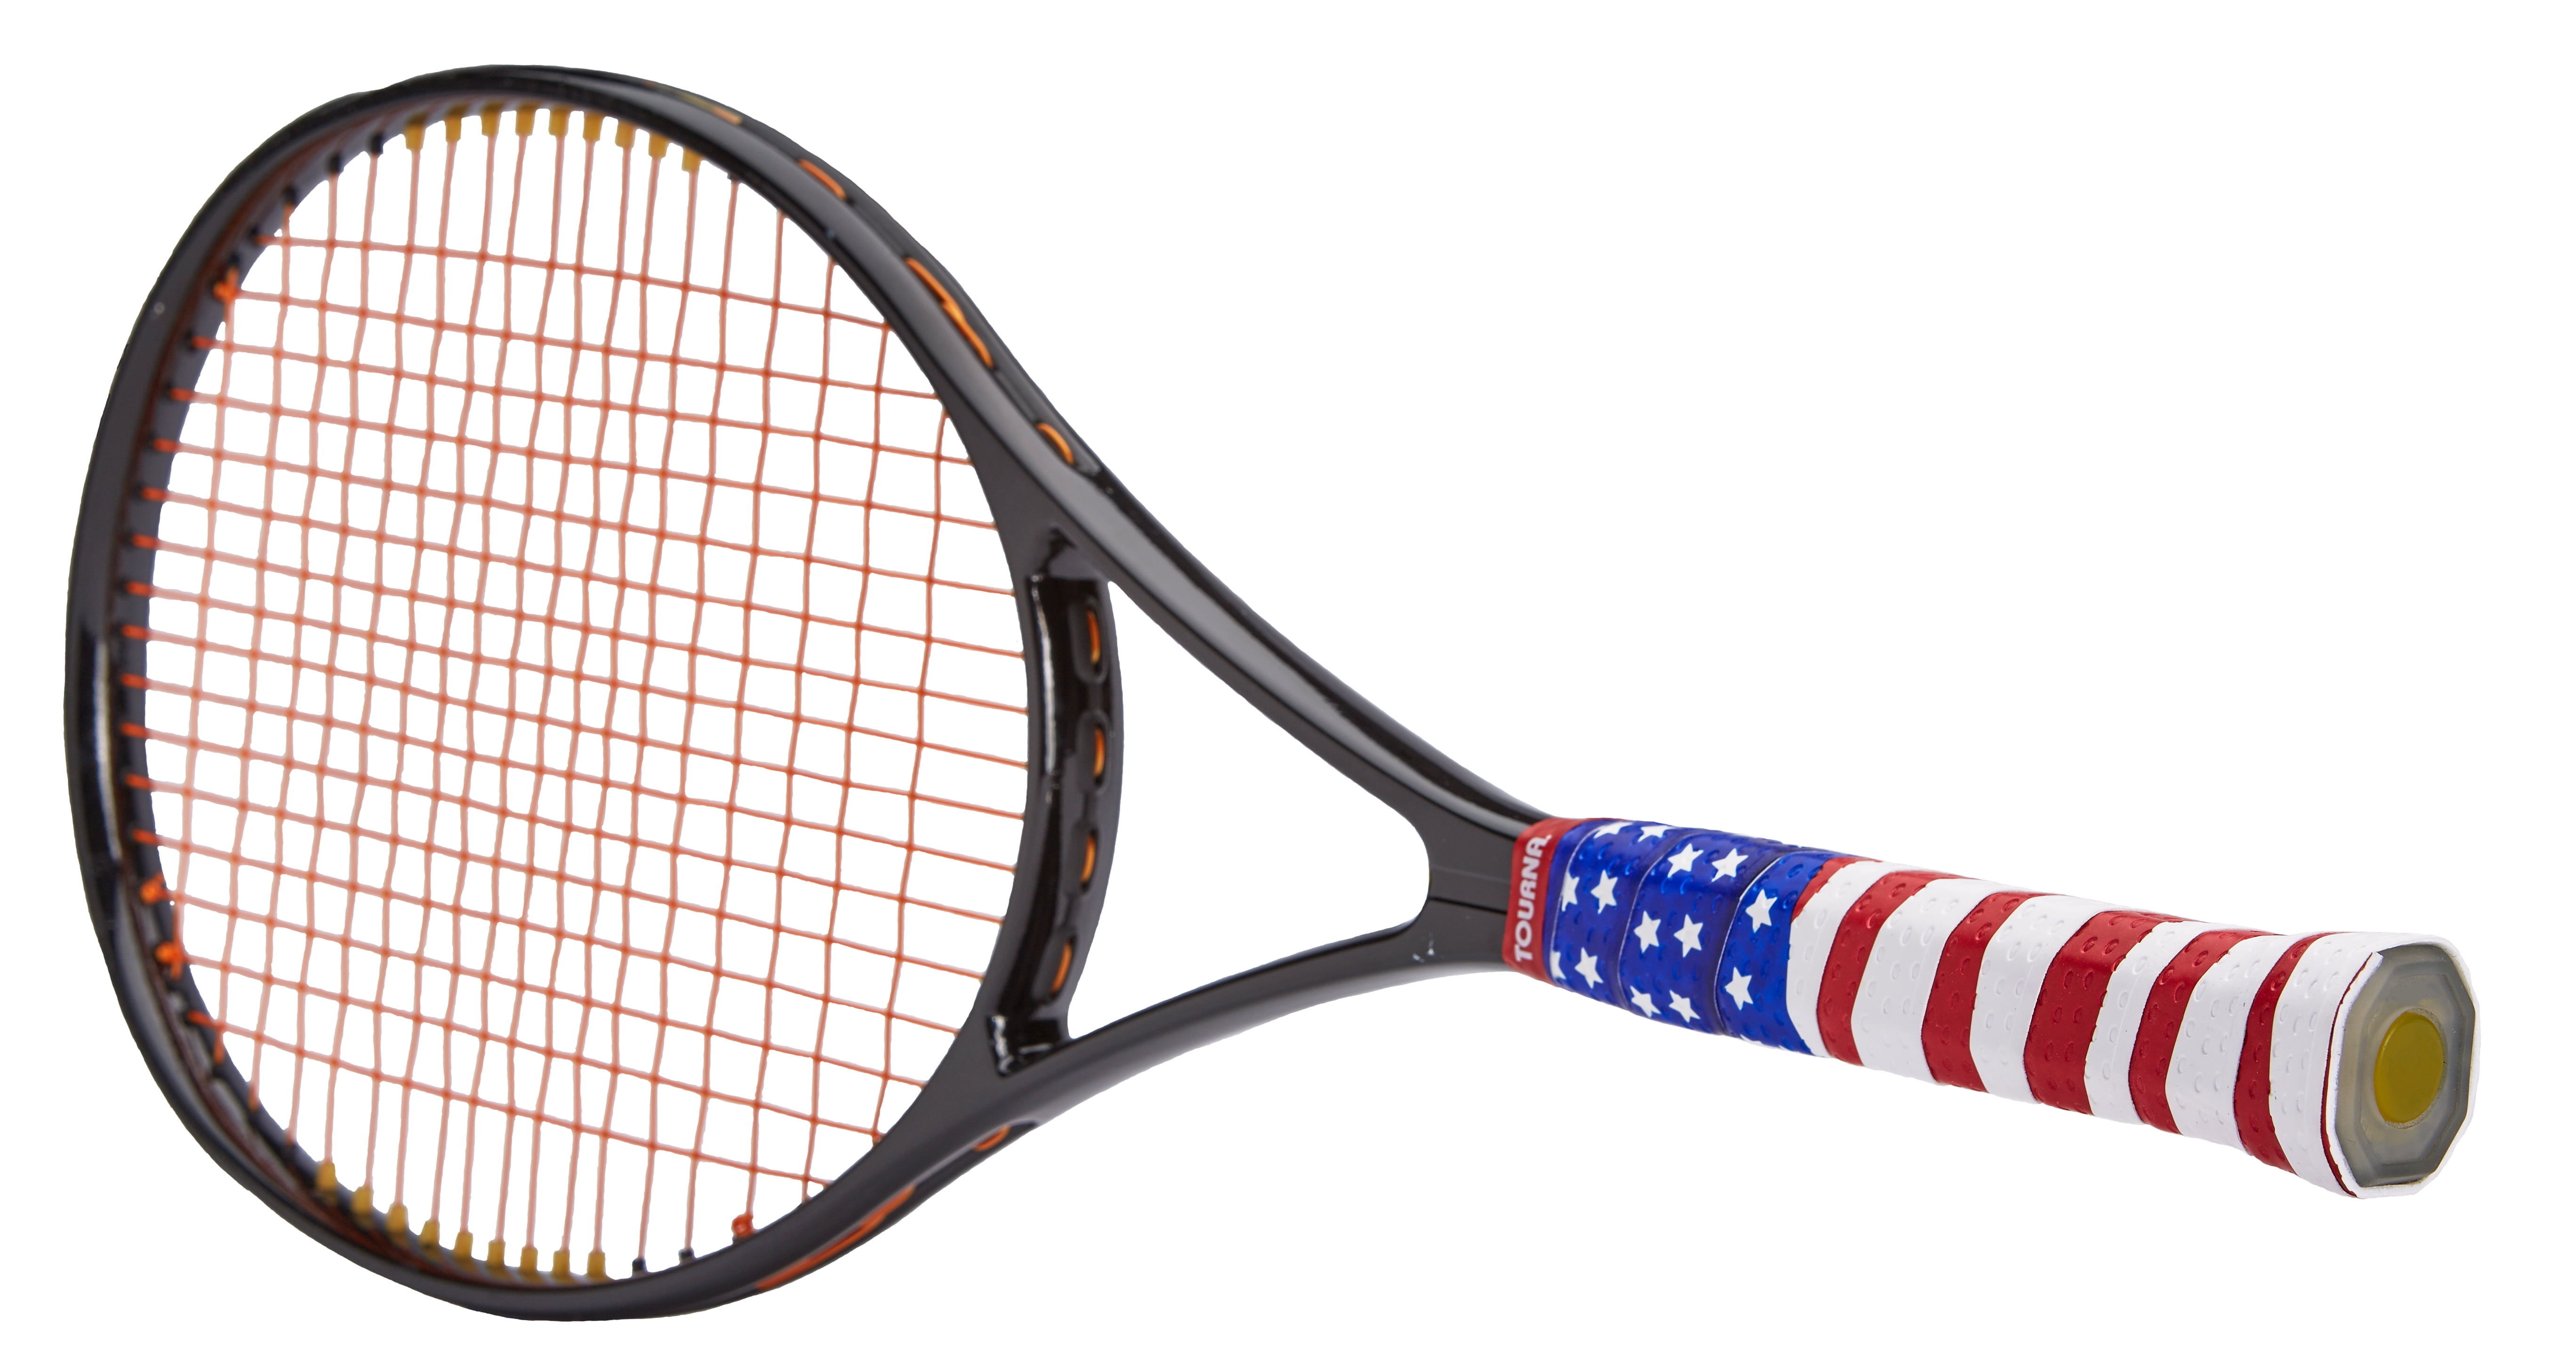 Tourna Mega Wrap Replacement Tennis Grip USA